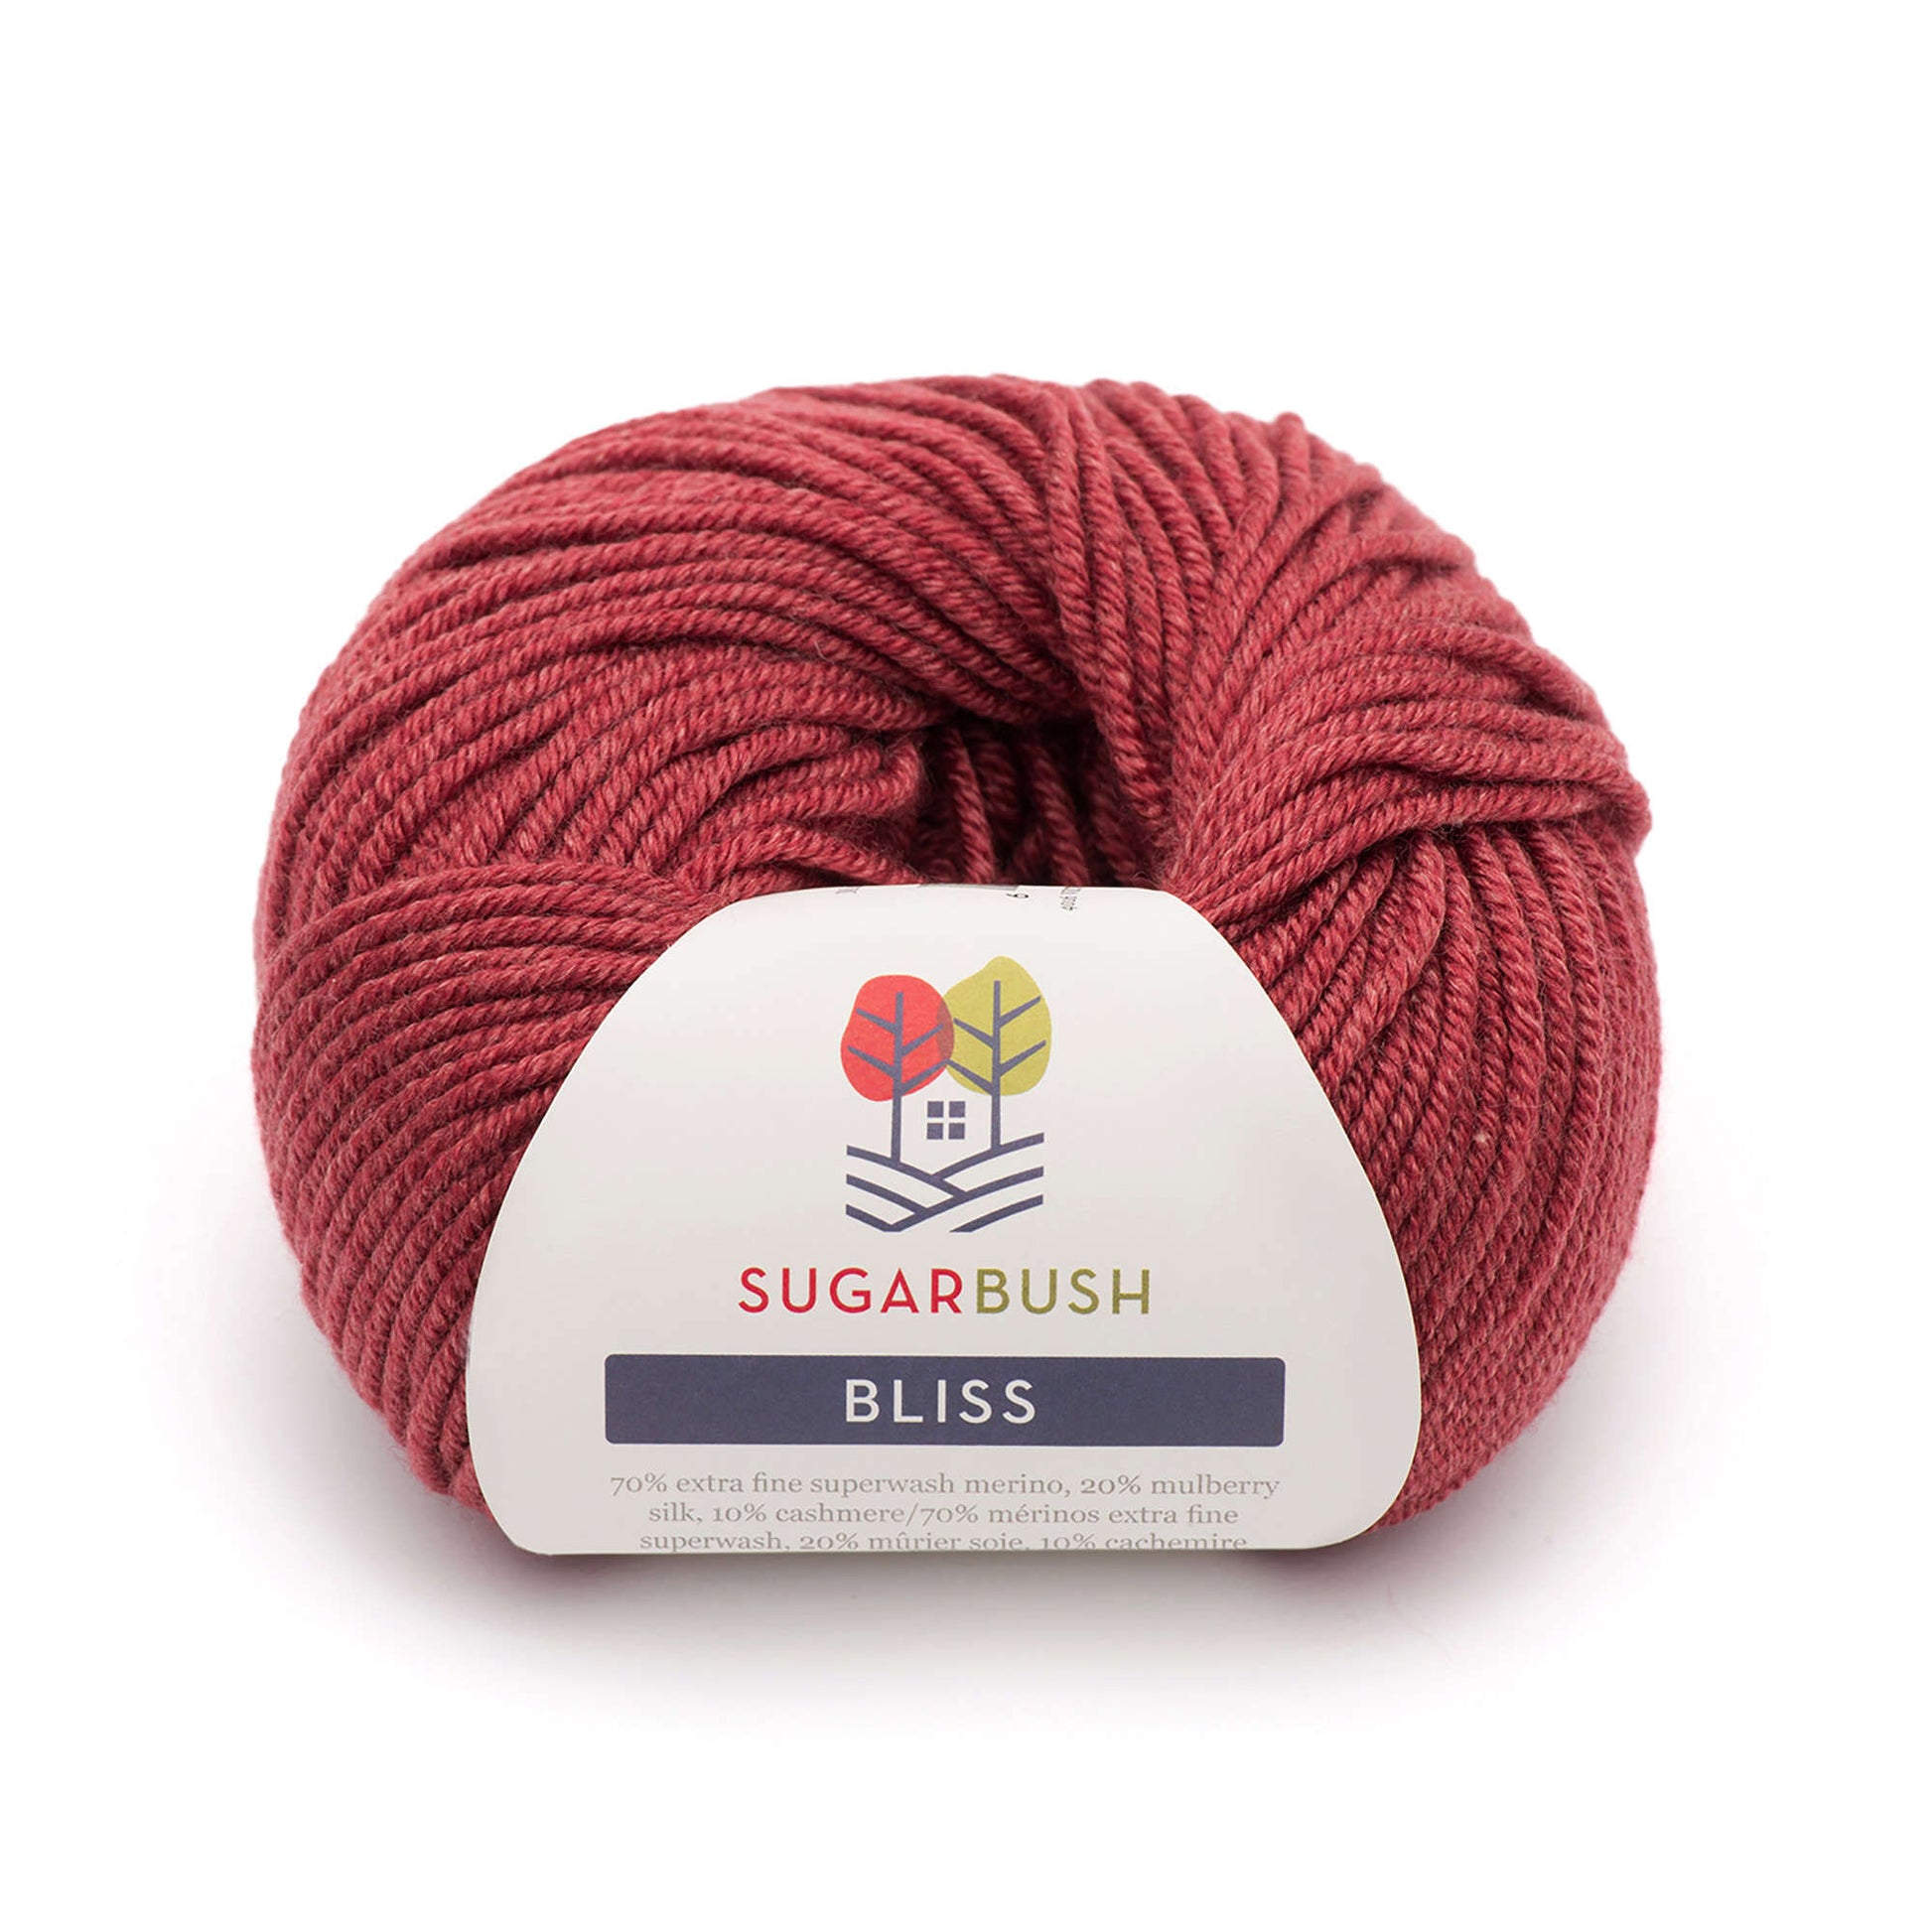 Sugar Bush Bliss Yarn - Discontinued